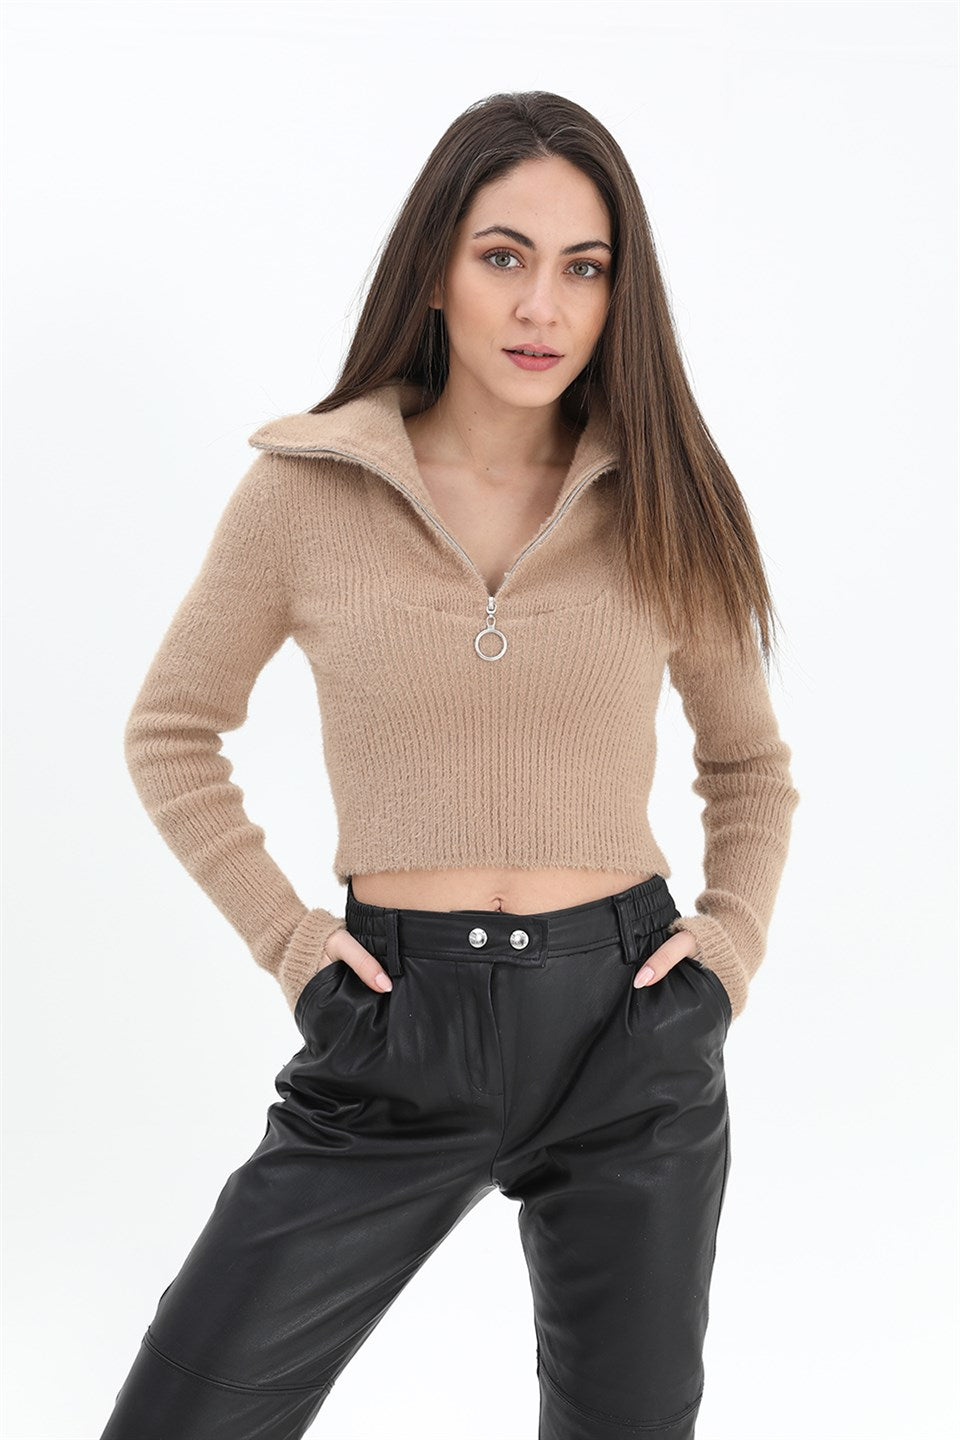 Women's Zipper Corduroy Knitwear Sweater - Camel - STREETMODE ™